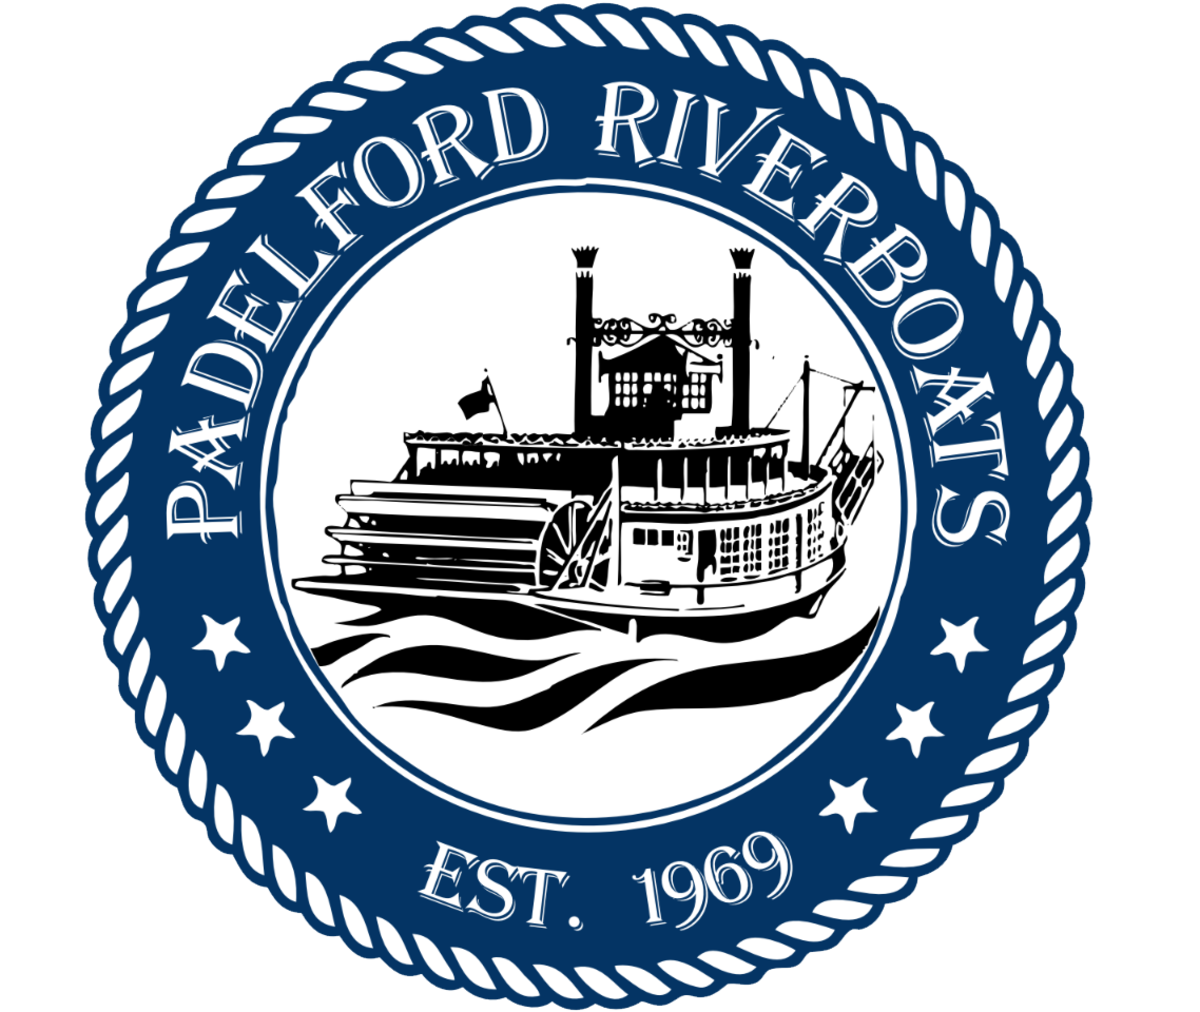 Padelford Riverboats, logo